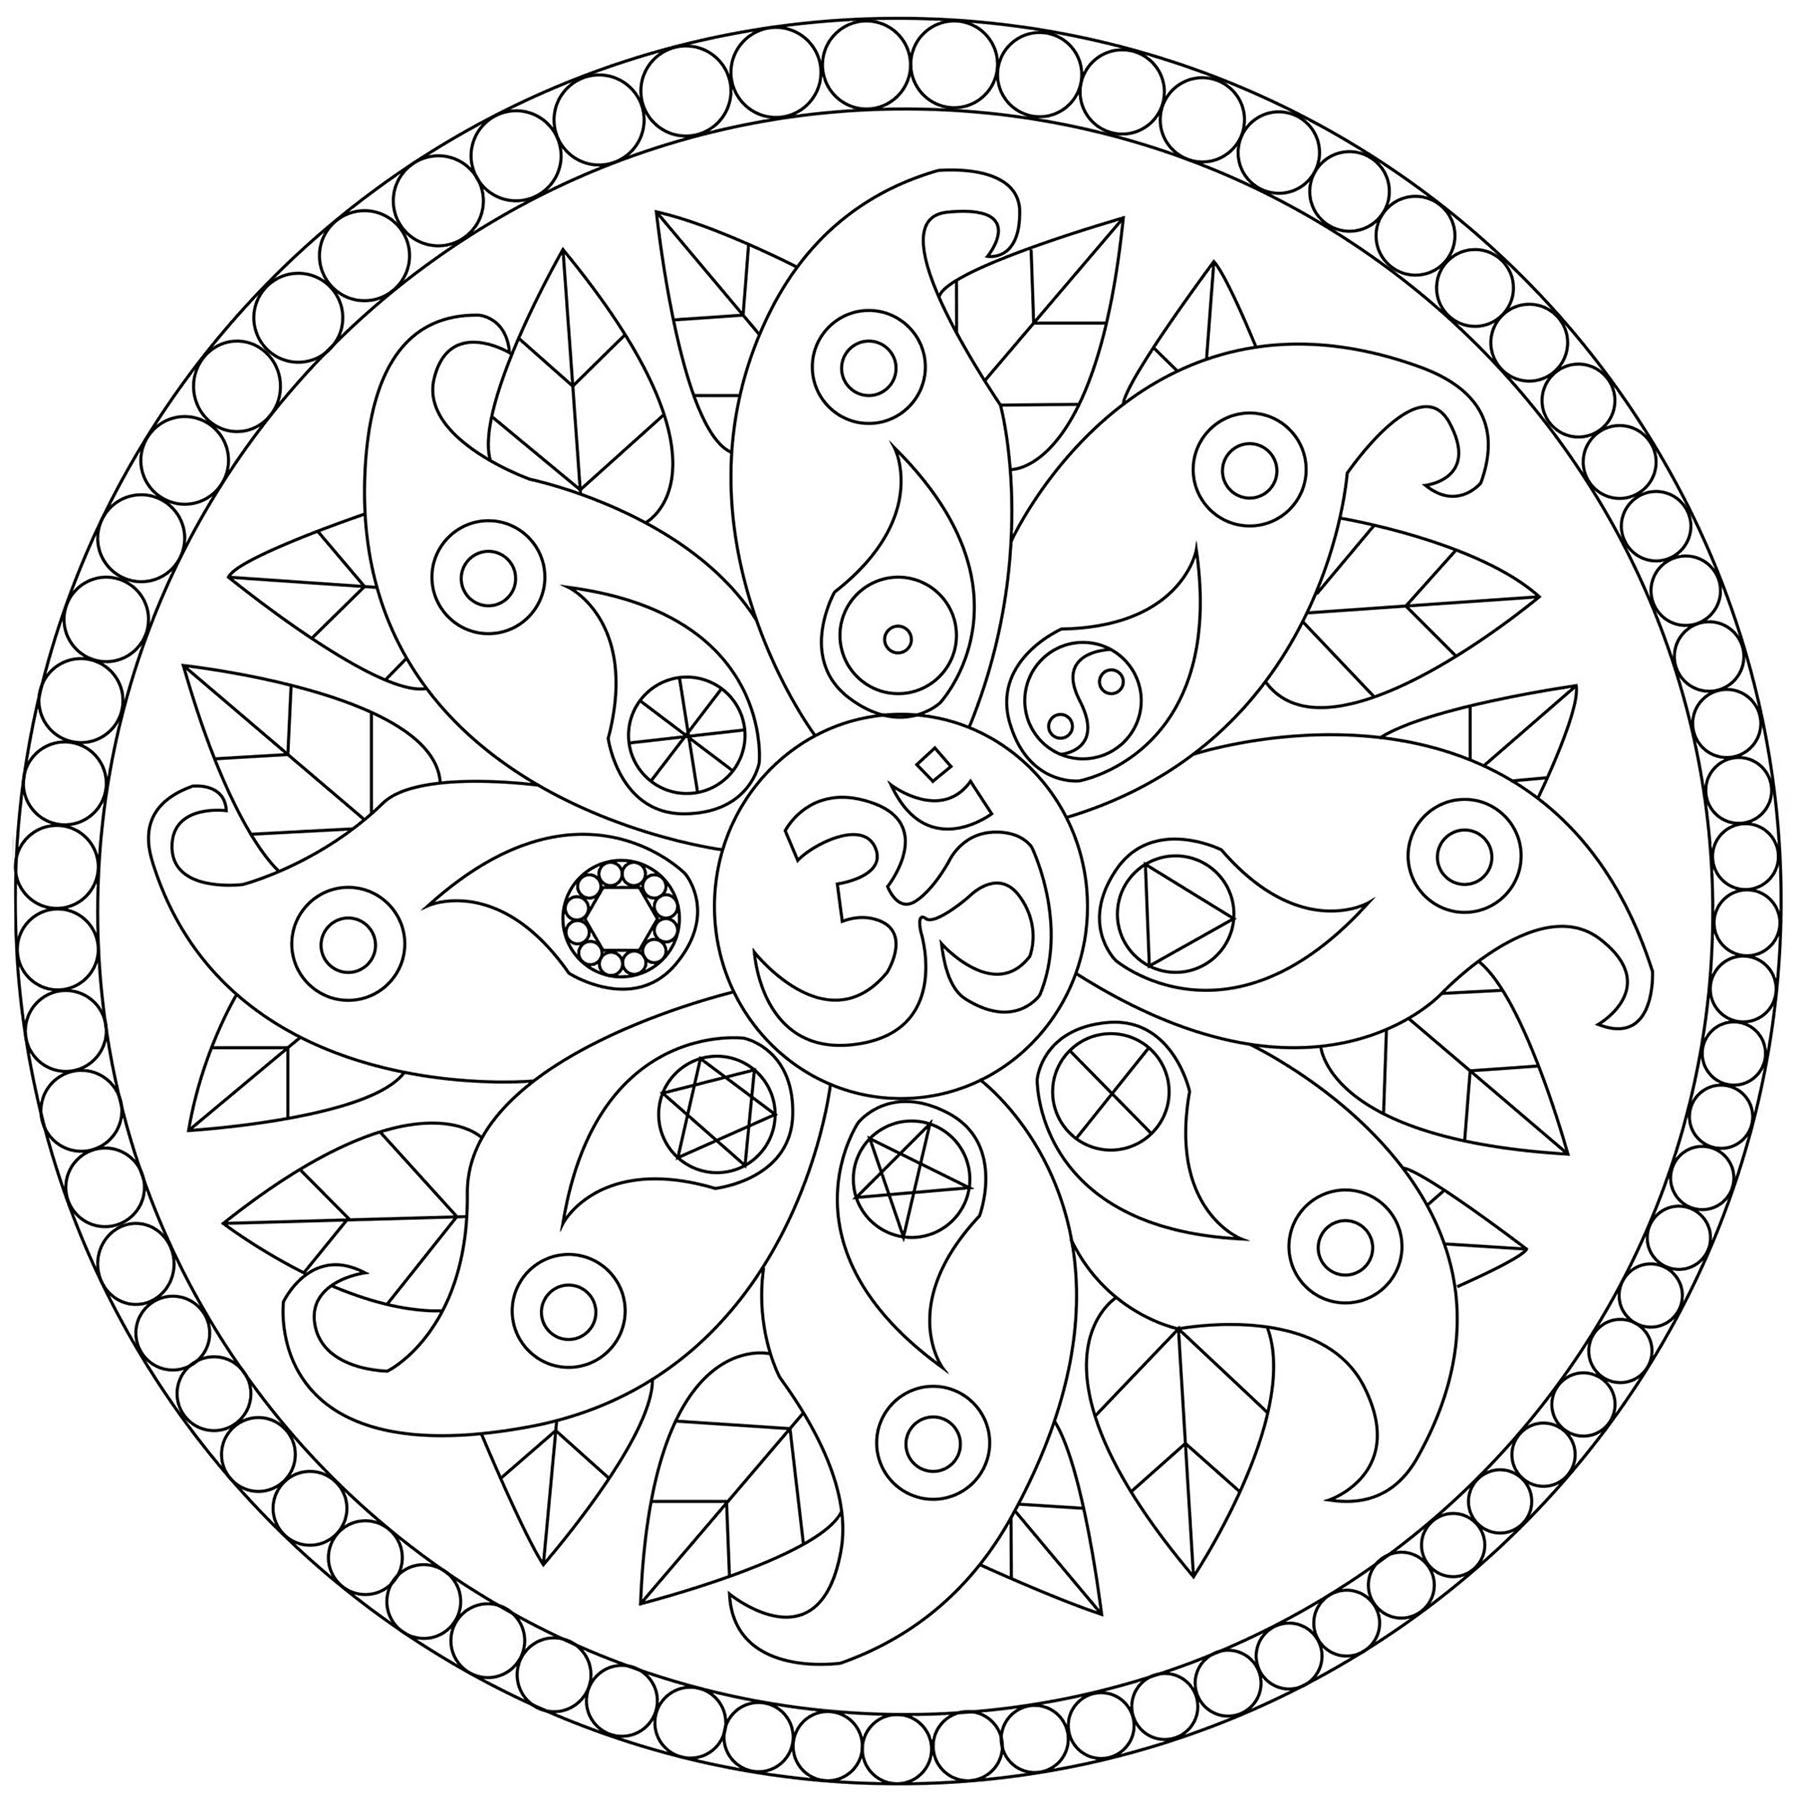 mandala-with-various-symbols-mandalas-kids-coloring-pages